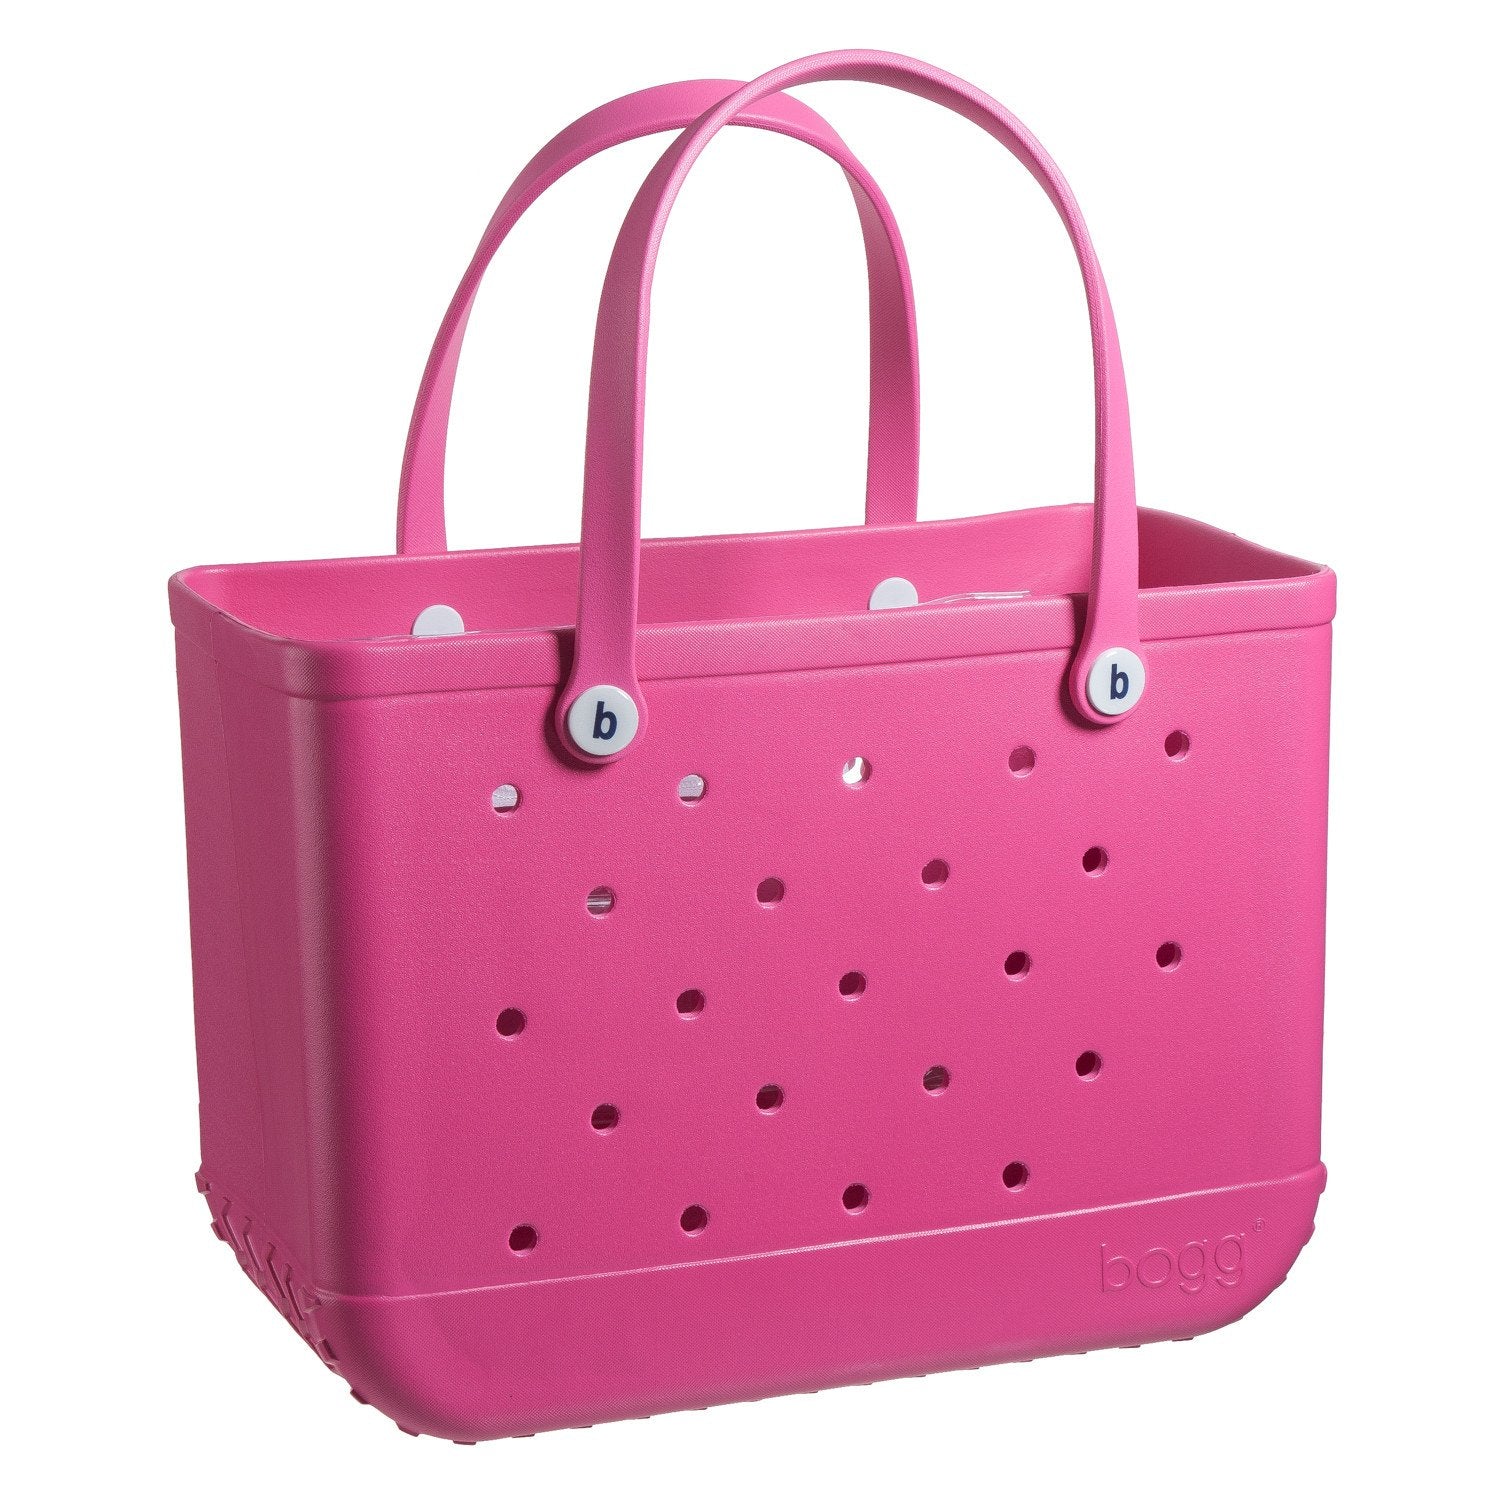 Buy haute-pink Original Bogg Bag Tote